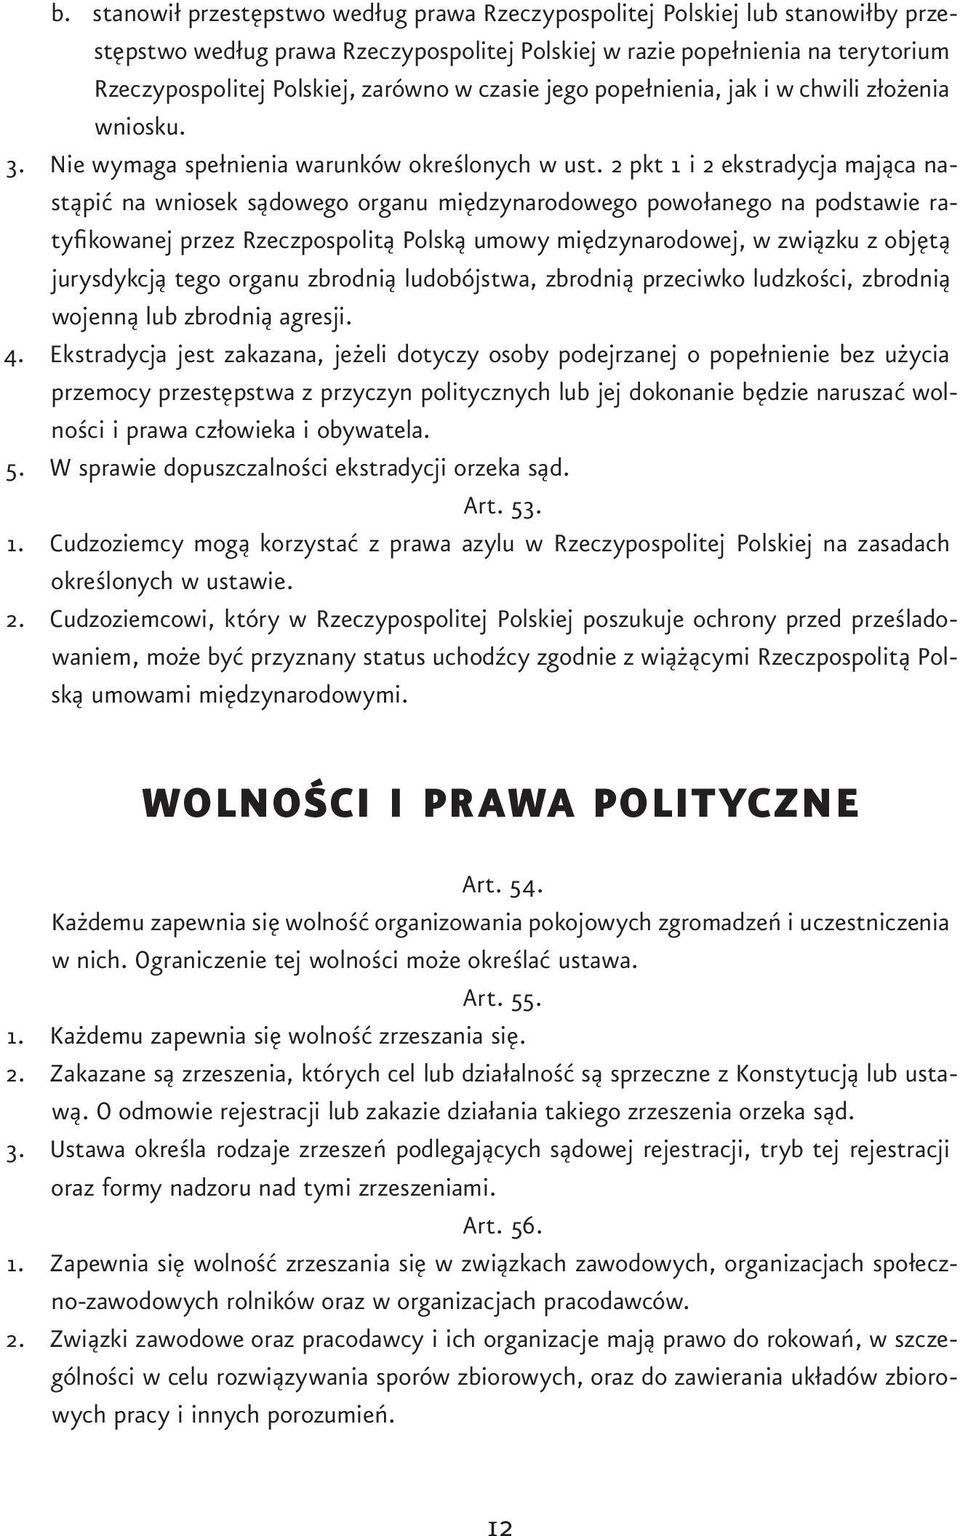 2 pkt 1 i 2 ekstradycja mająca nastąpić na wniosek sądowego organu międzynarodowego powołanego na podstawie ratyfikowanej przez Rzeczpospolitą Polską umowy międzynarodowej, w związku z objętą